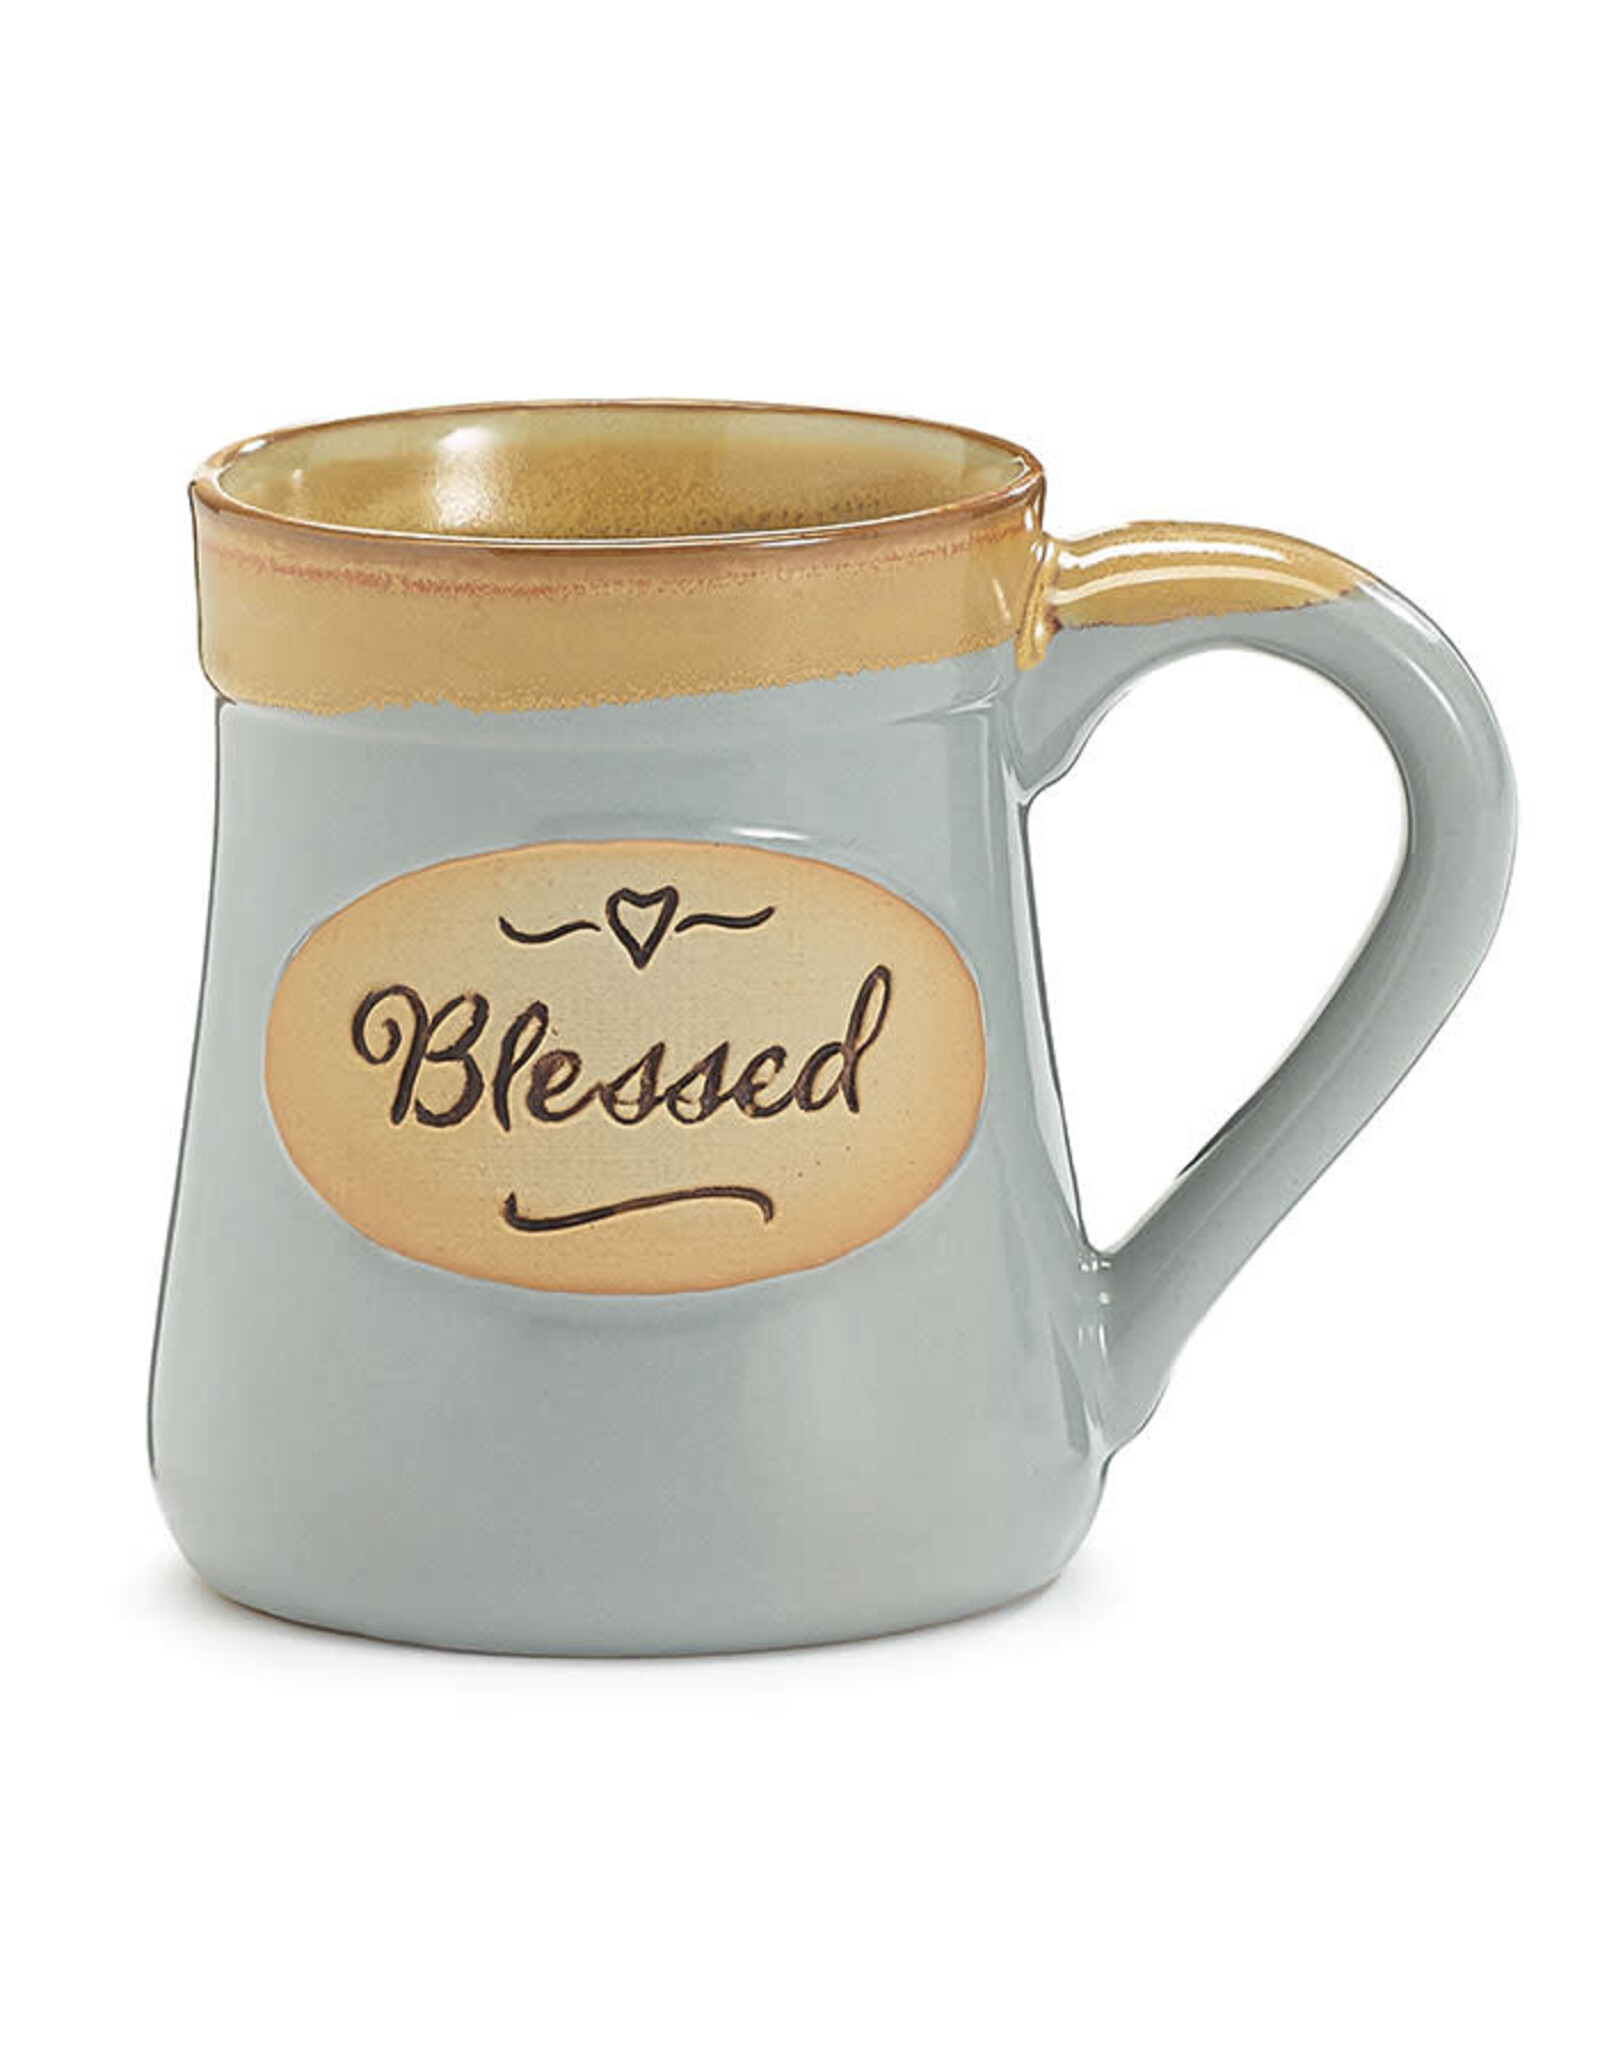 Burton + Burton Blessed Mug-Every Good and Perfect Gift